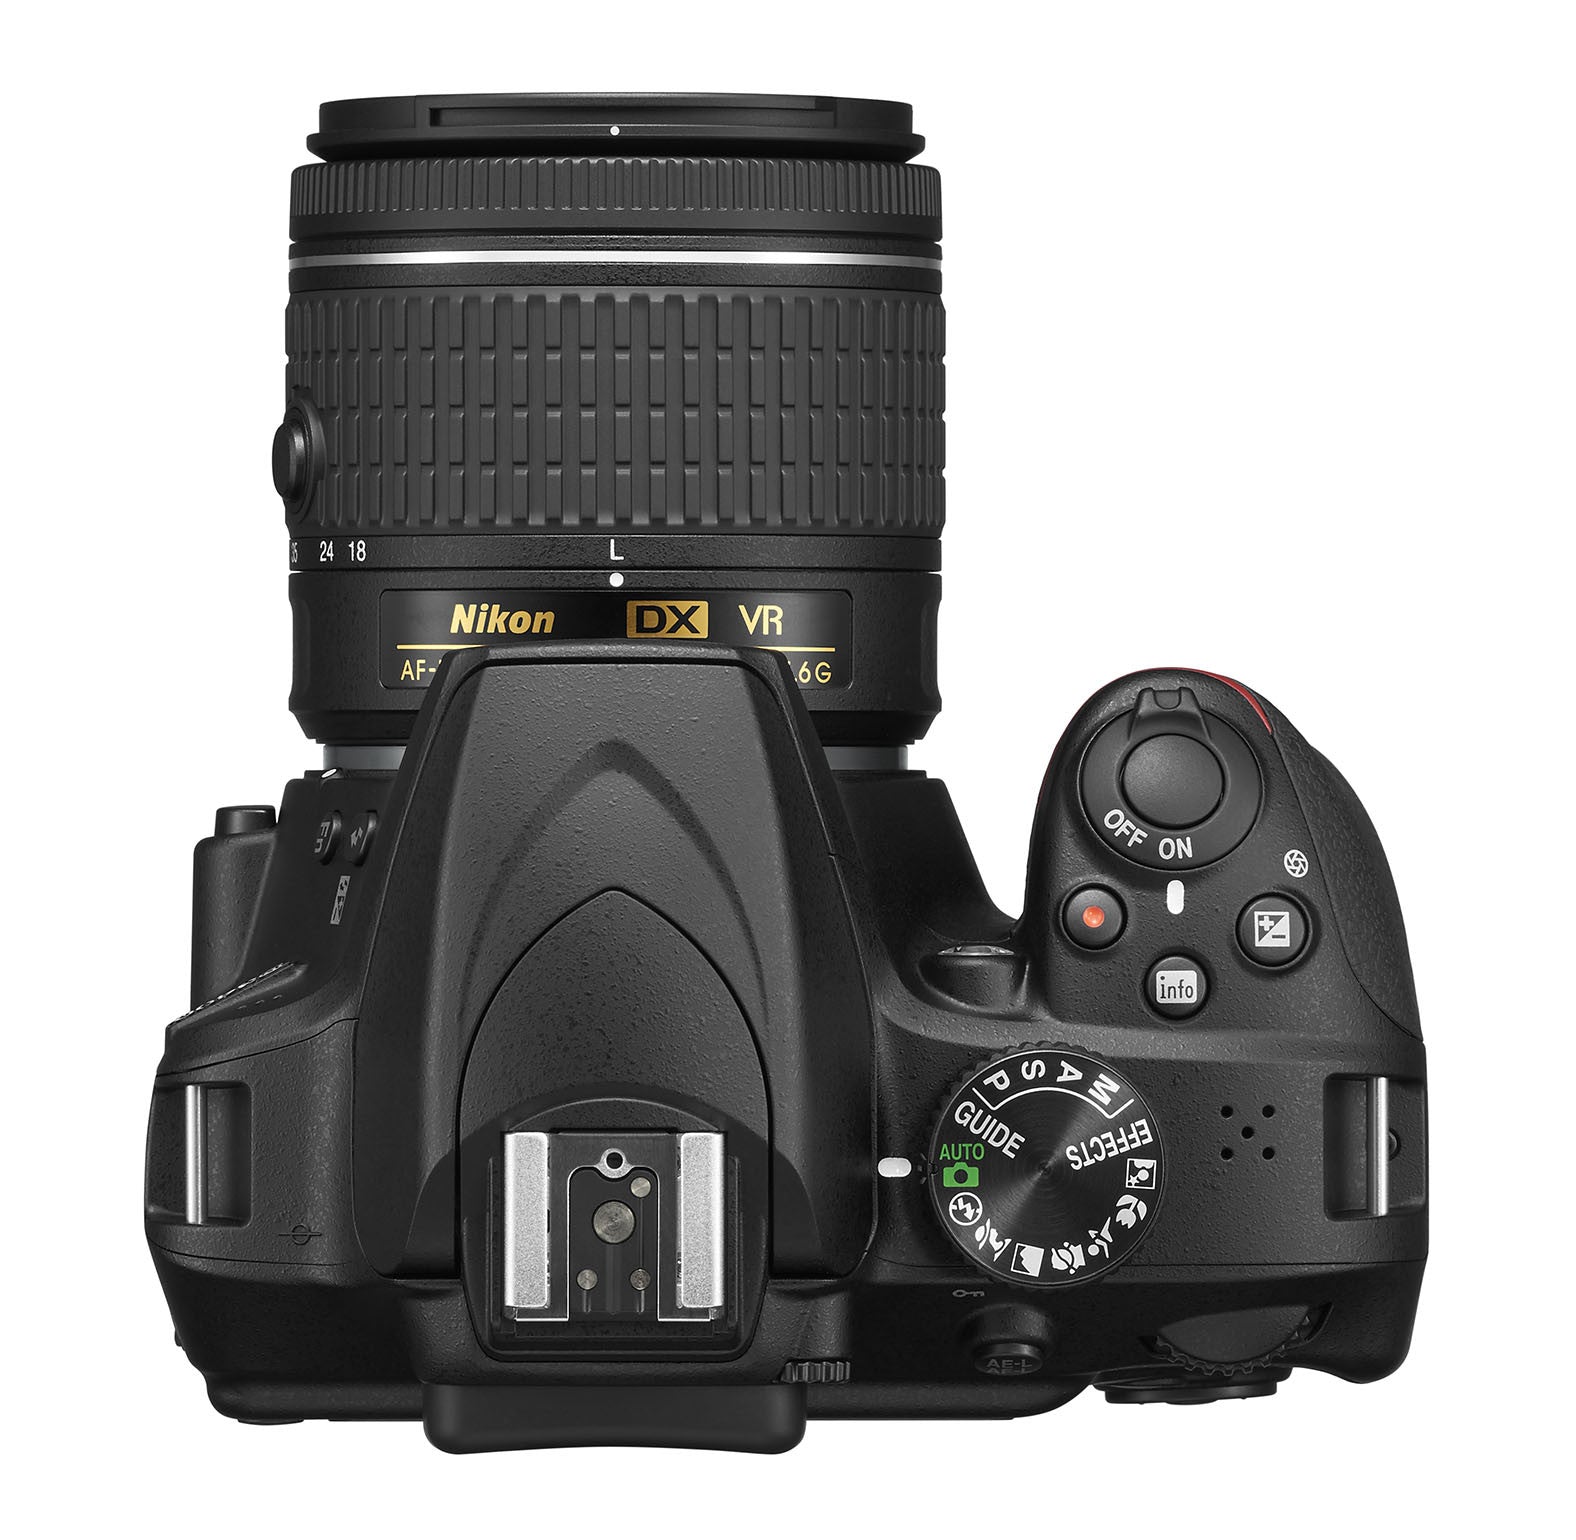 Nikon D3400 DX-format Digital SLR Kit w/ 18-55mm DX G VR Zoom Lens Black, camera dslr cameras, Nikon - Pictureline  - 7